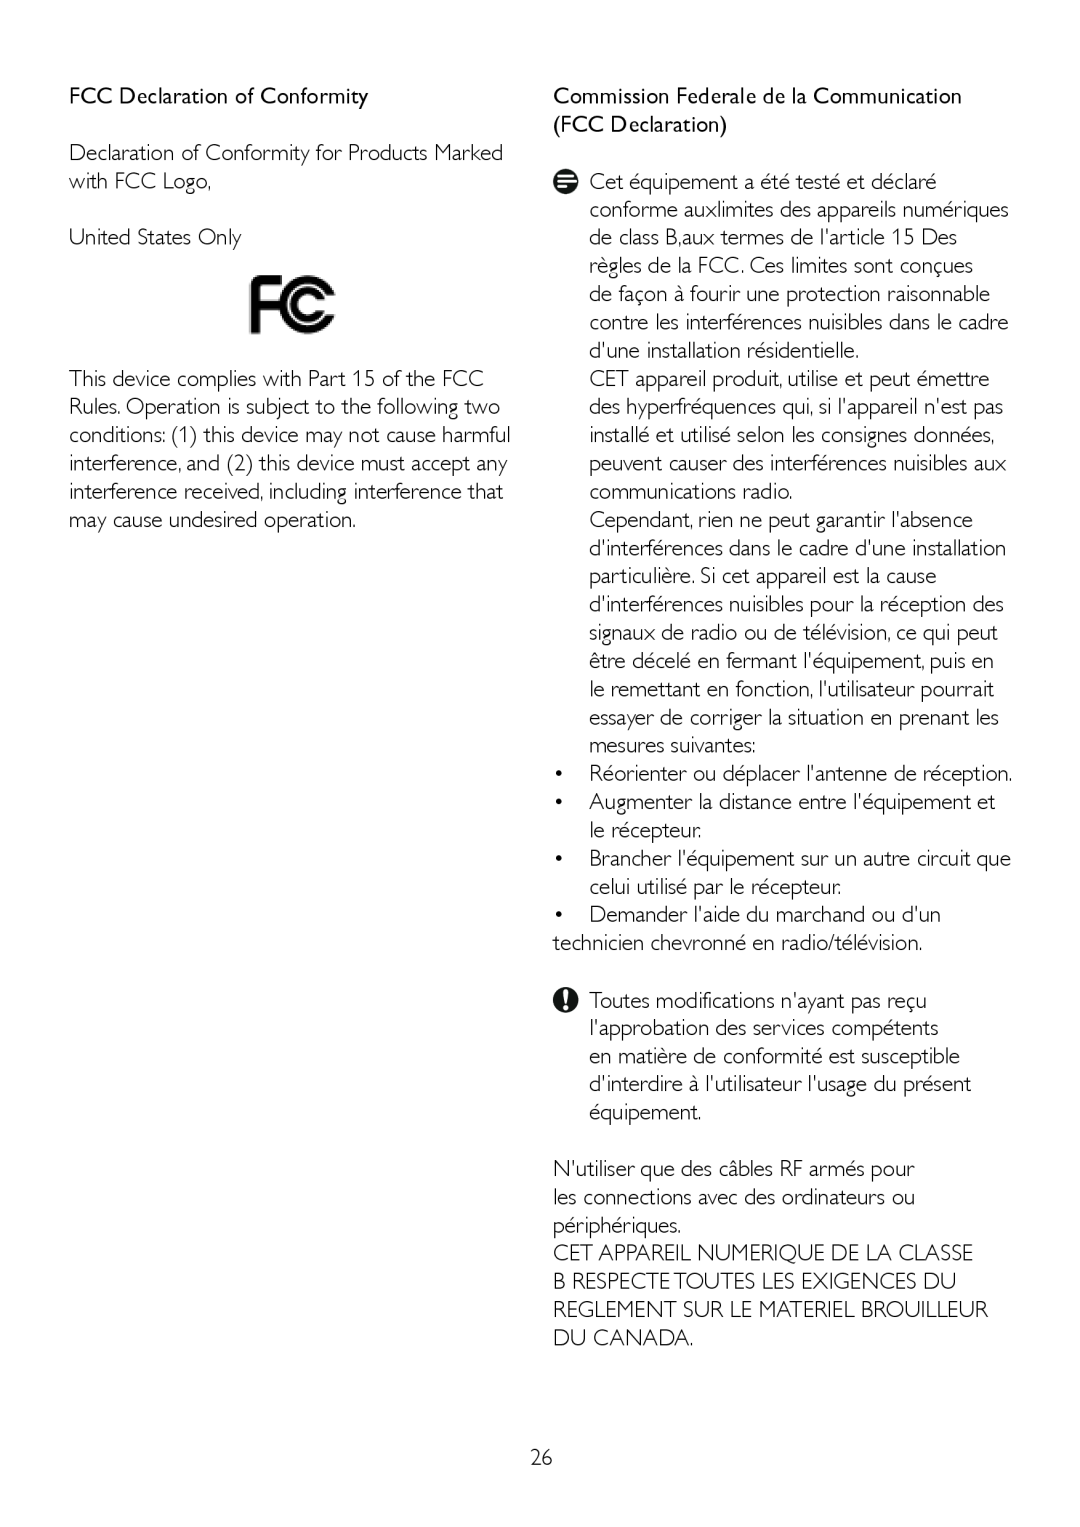 Philips 232EL2, 2.32E+04 FCC Declaration of Conformity, Declaration of Conformity for Products Marked with FCC Logo 